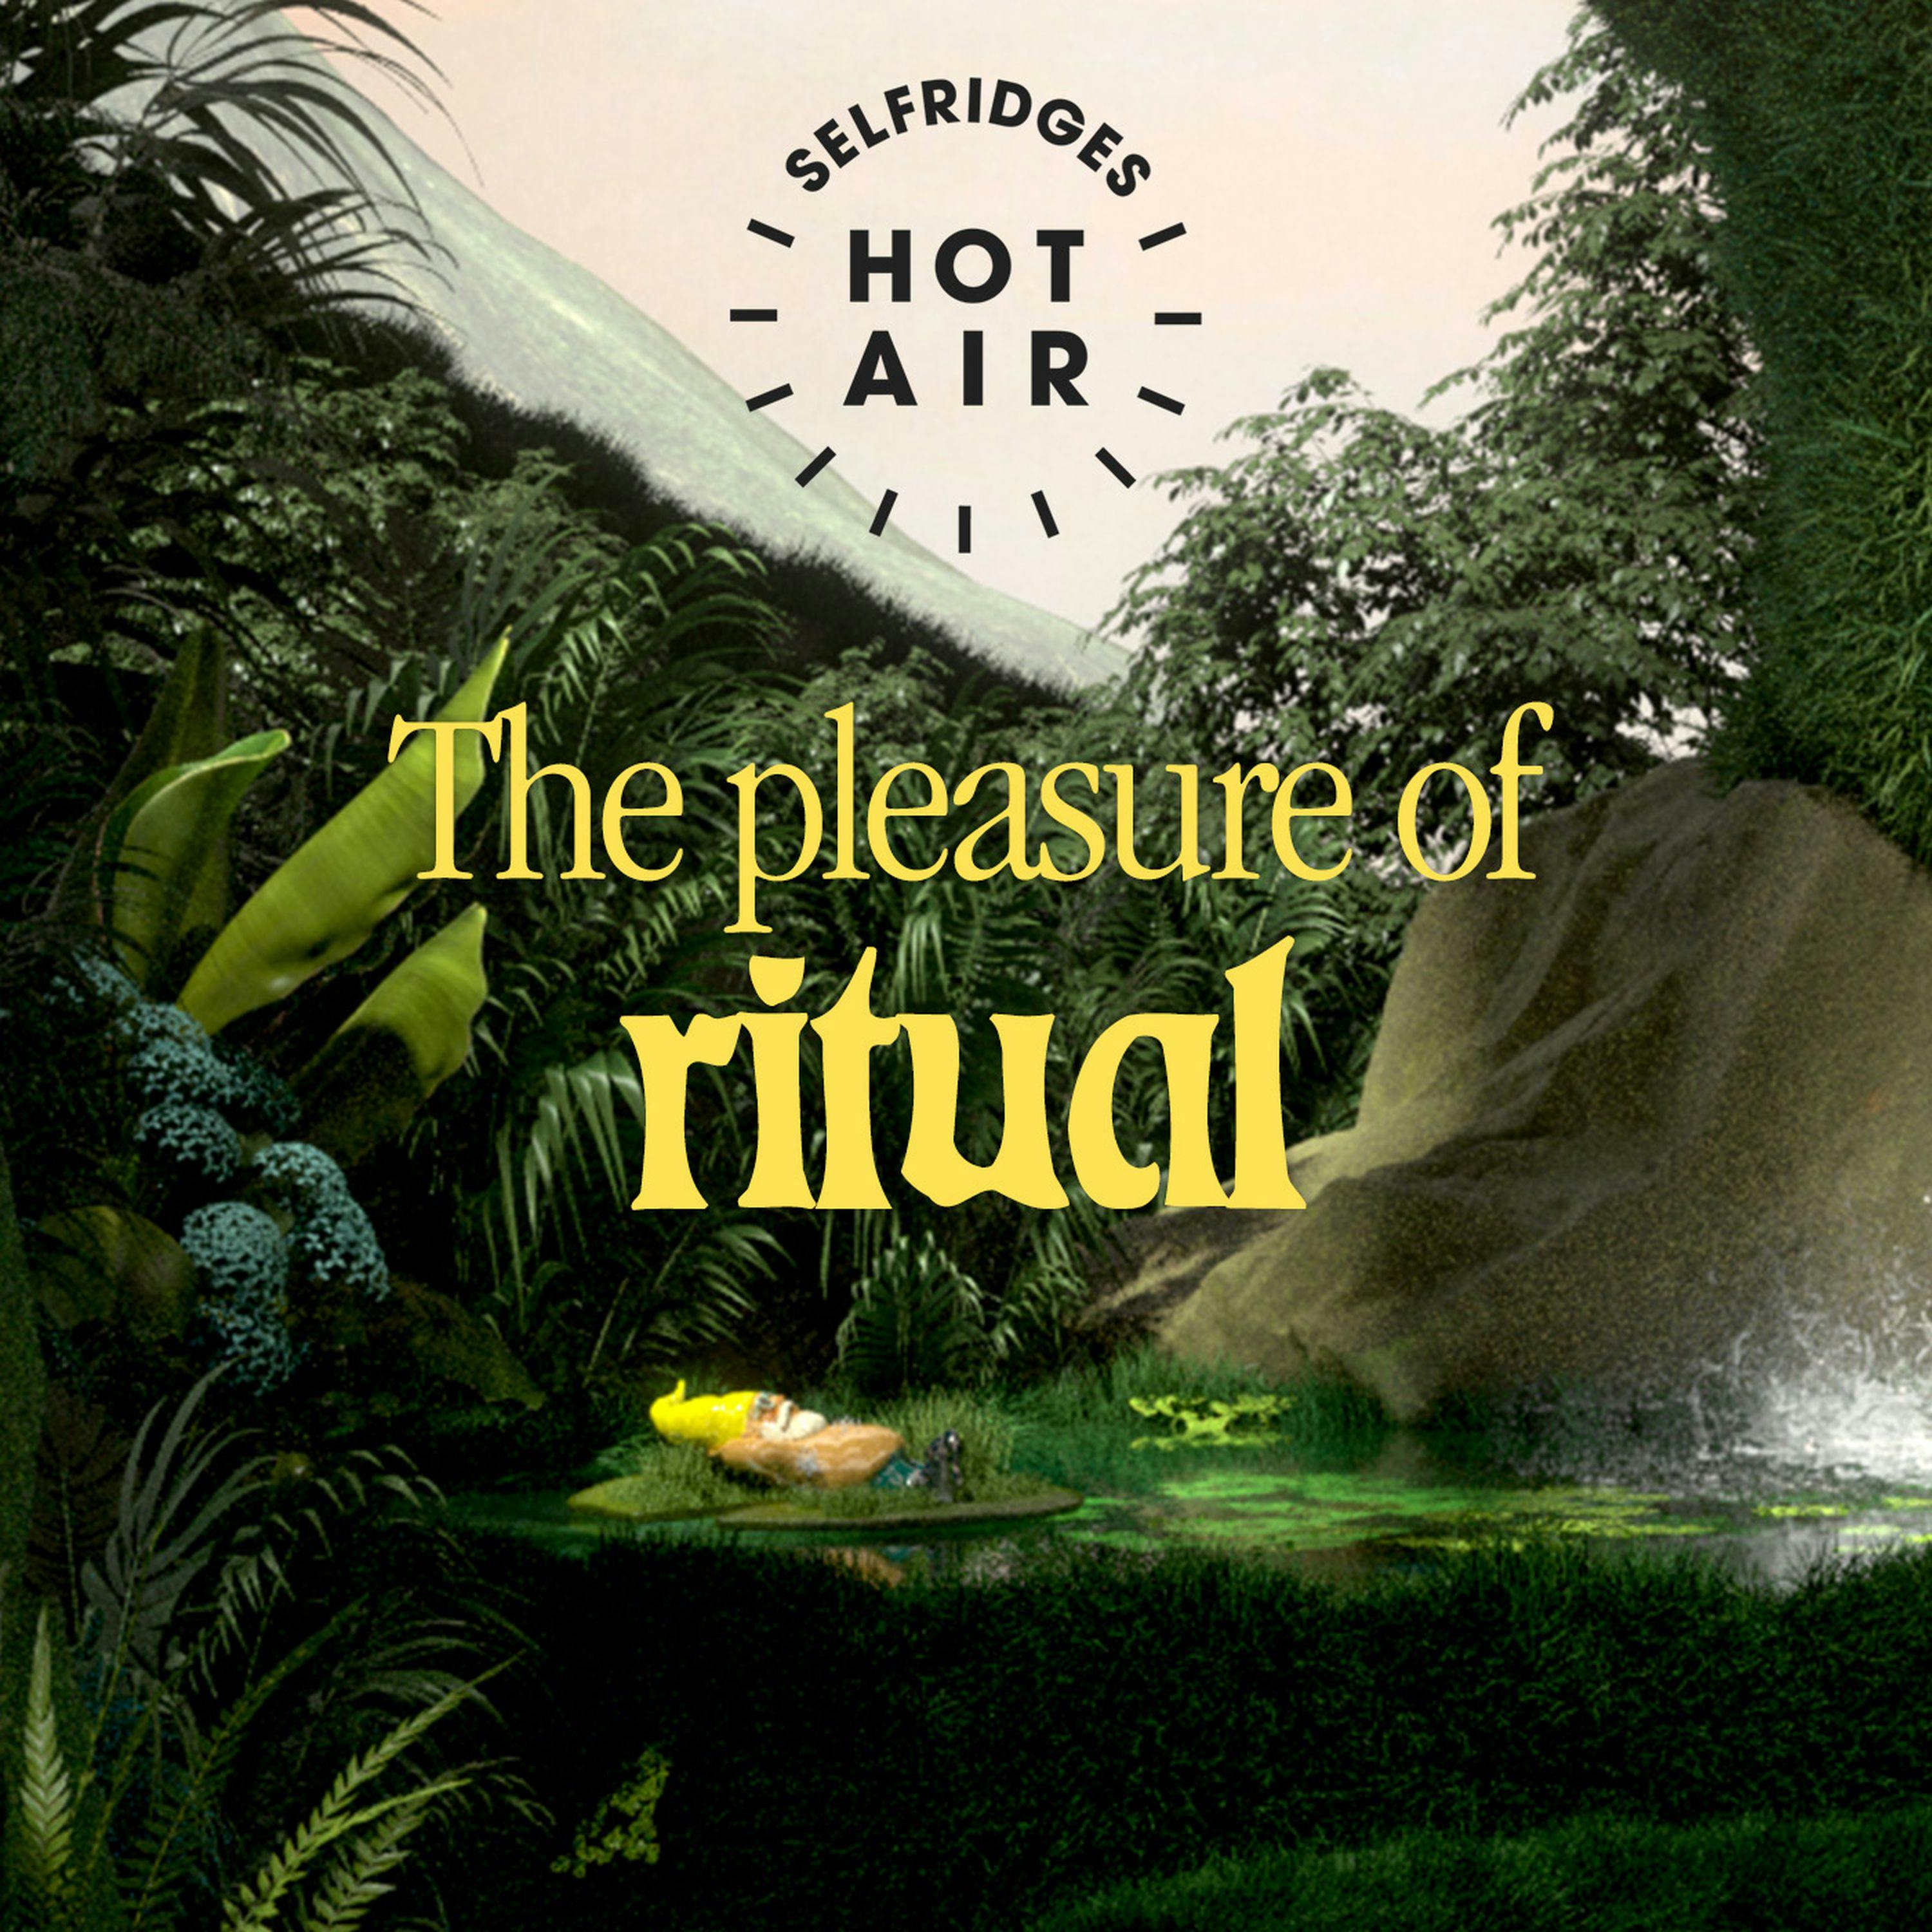 Good Nature: The pleasure of ritual